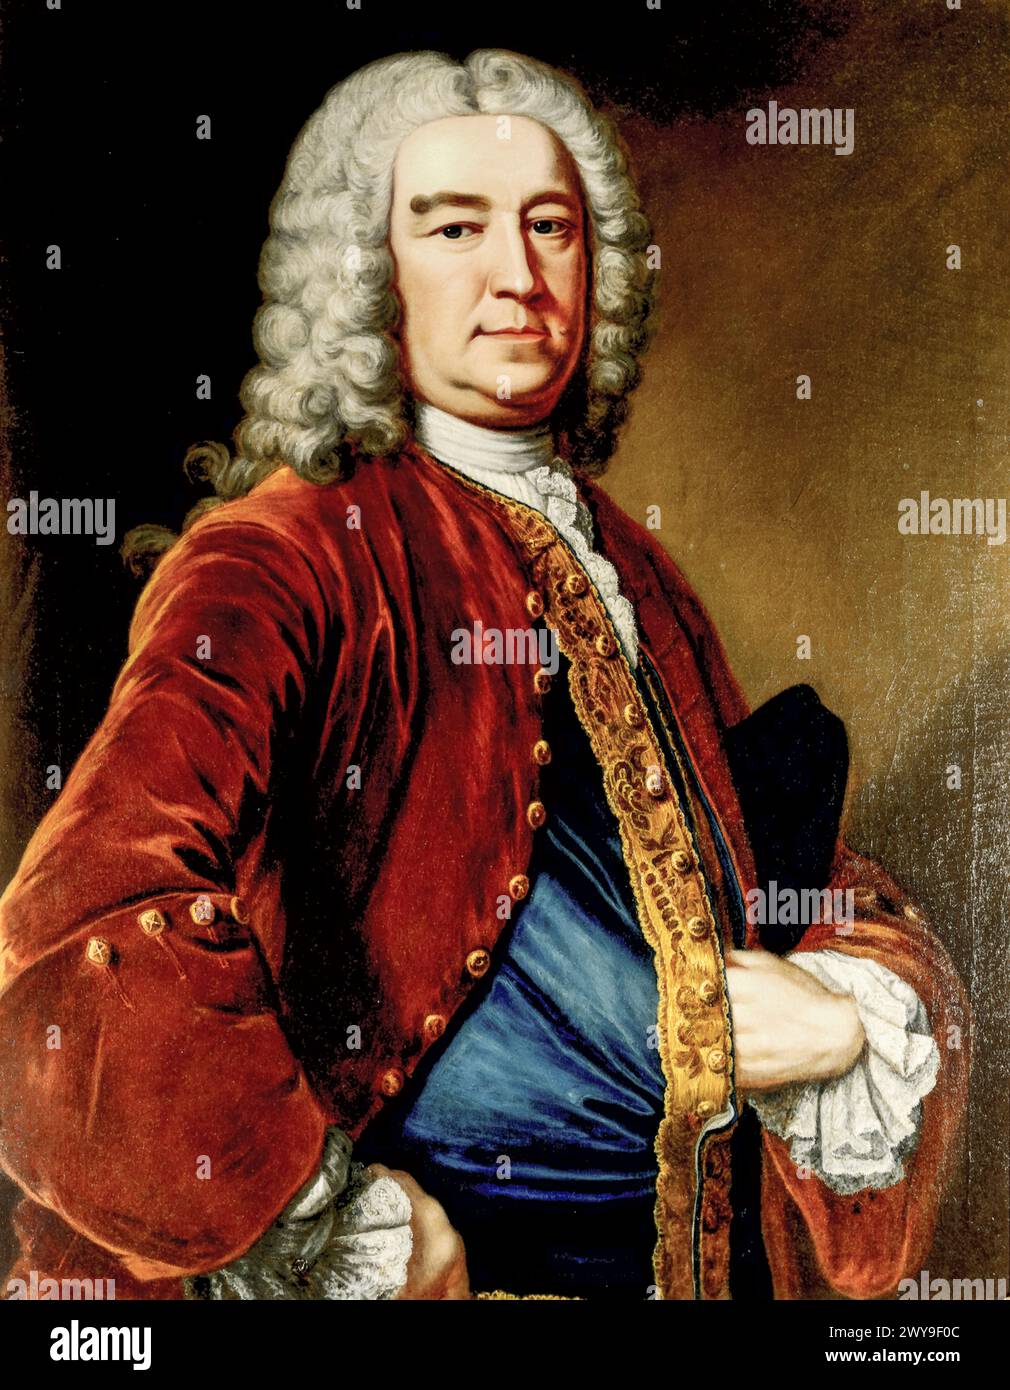 Henry Pelham (1694-1754), homme politique whig et premier ministre de Grande-Bretagne 1743-1754, portrait peint à l'huile sur toile par John Giles Eccardt (attribué), avant 1779 Banque D'Images